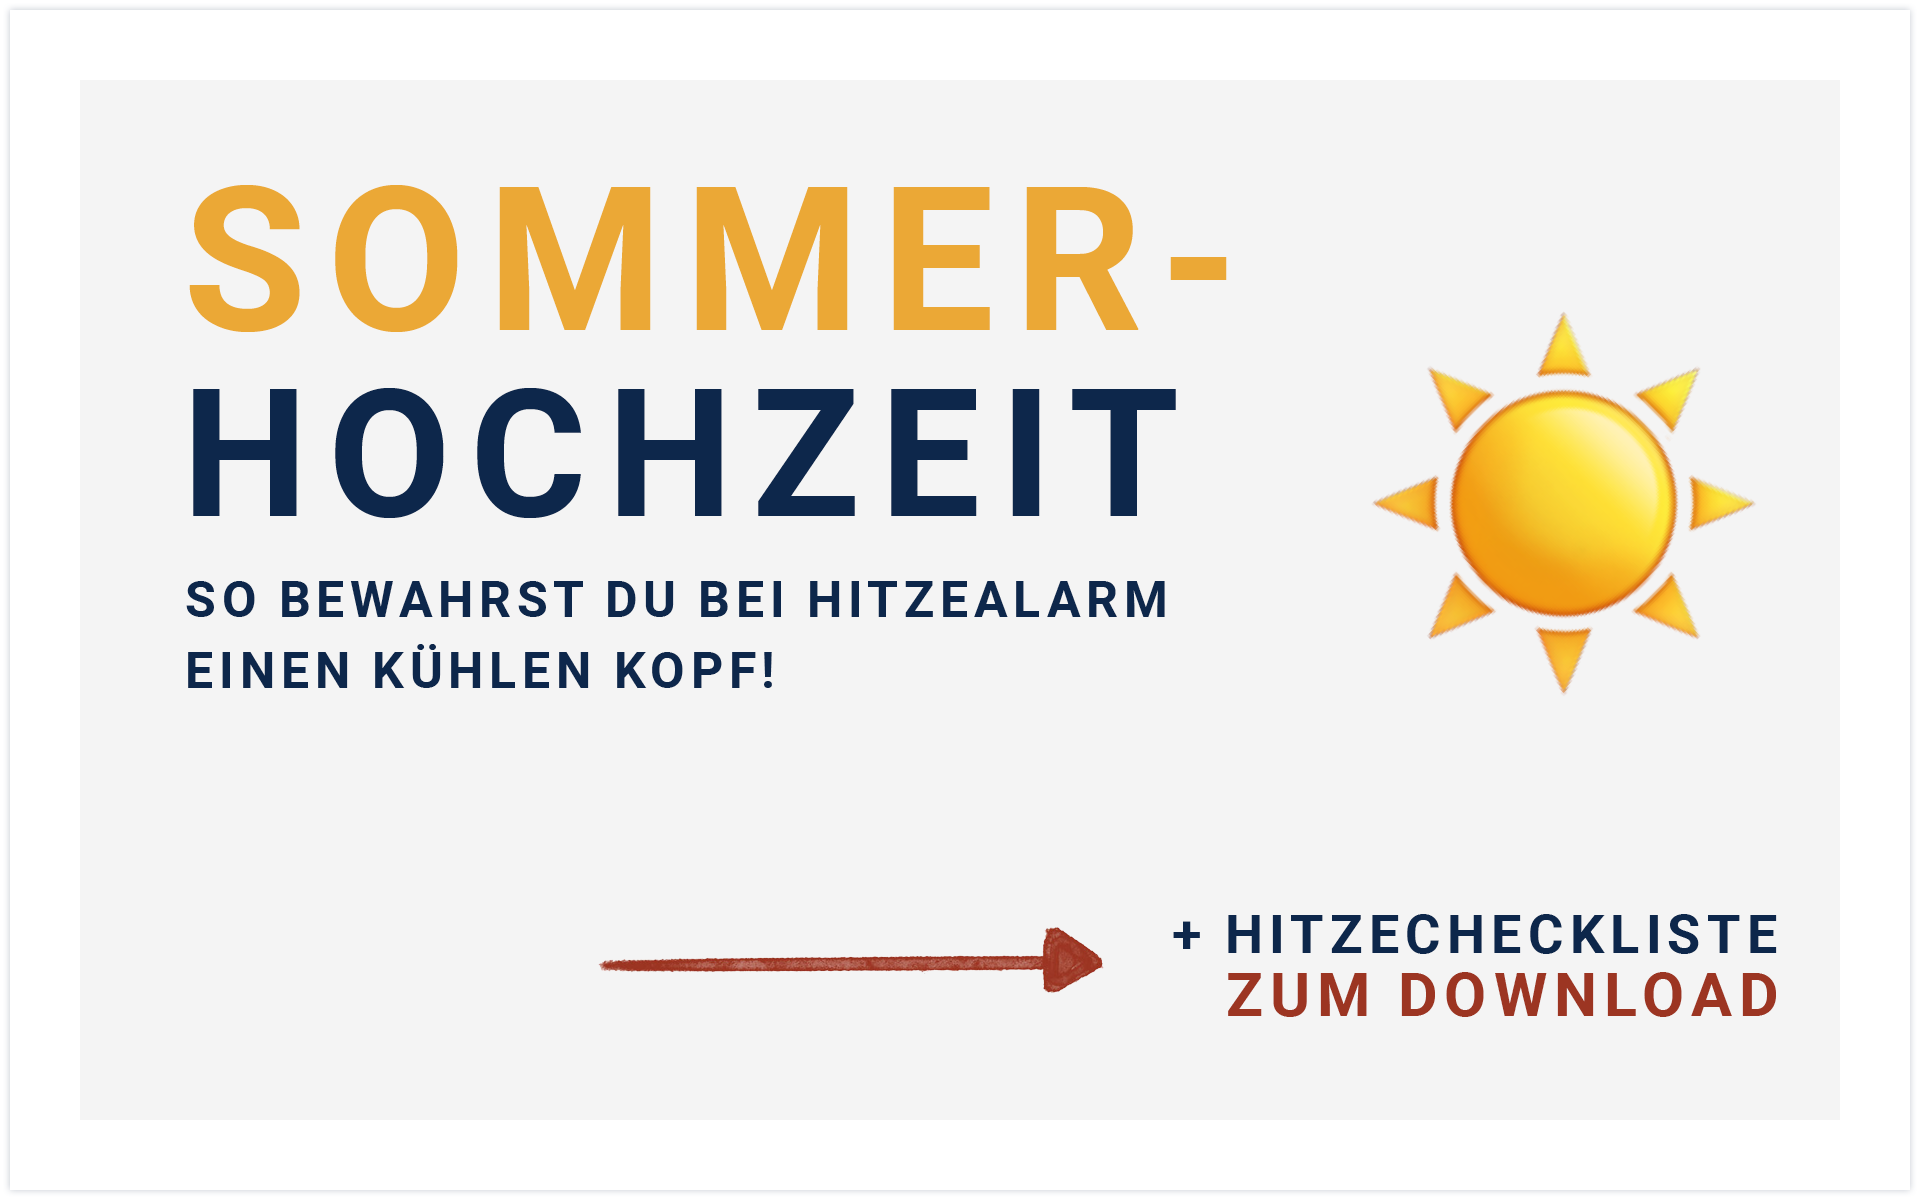 Bild mit Text: Sommerhochzeit - so bewahrst du bei Hitzealarm einen kühlen Kopf + Hitzecheckliste zum Download